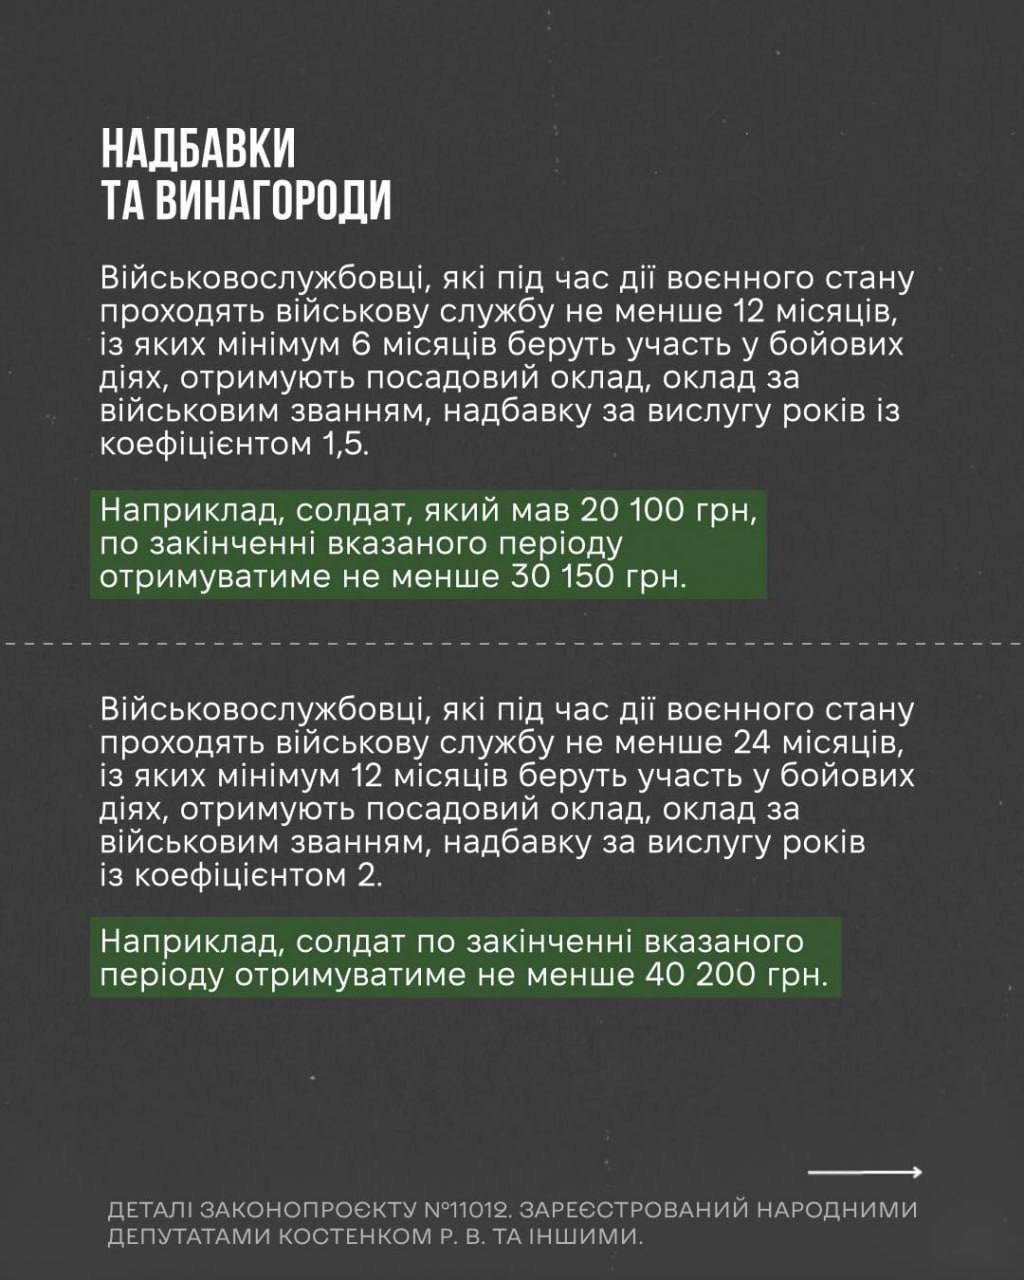 Снимок законопроекта на rada.gov.ua (с.4)